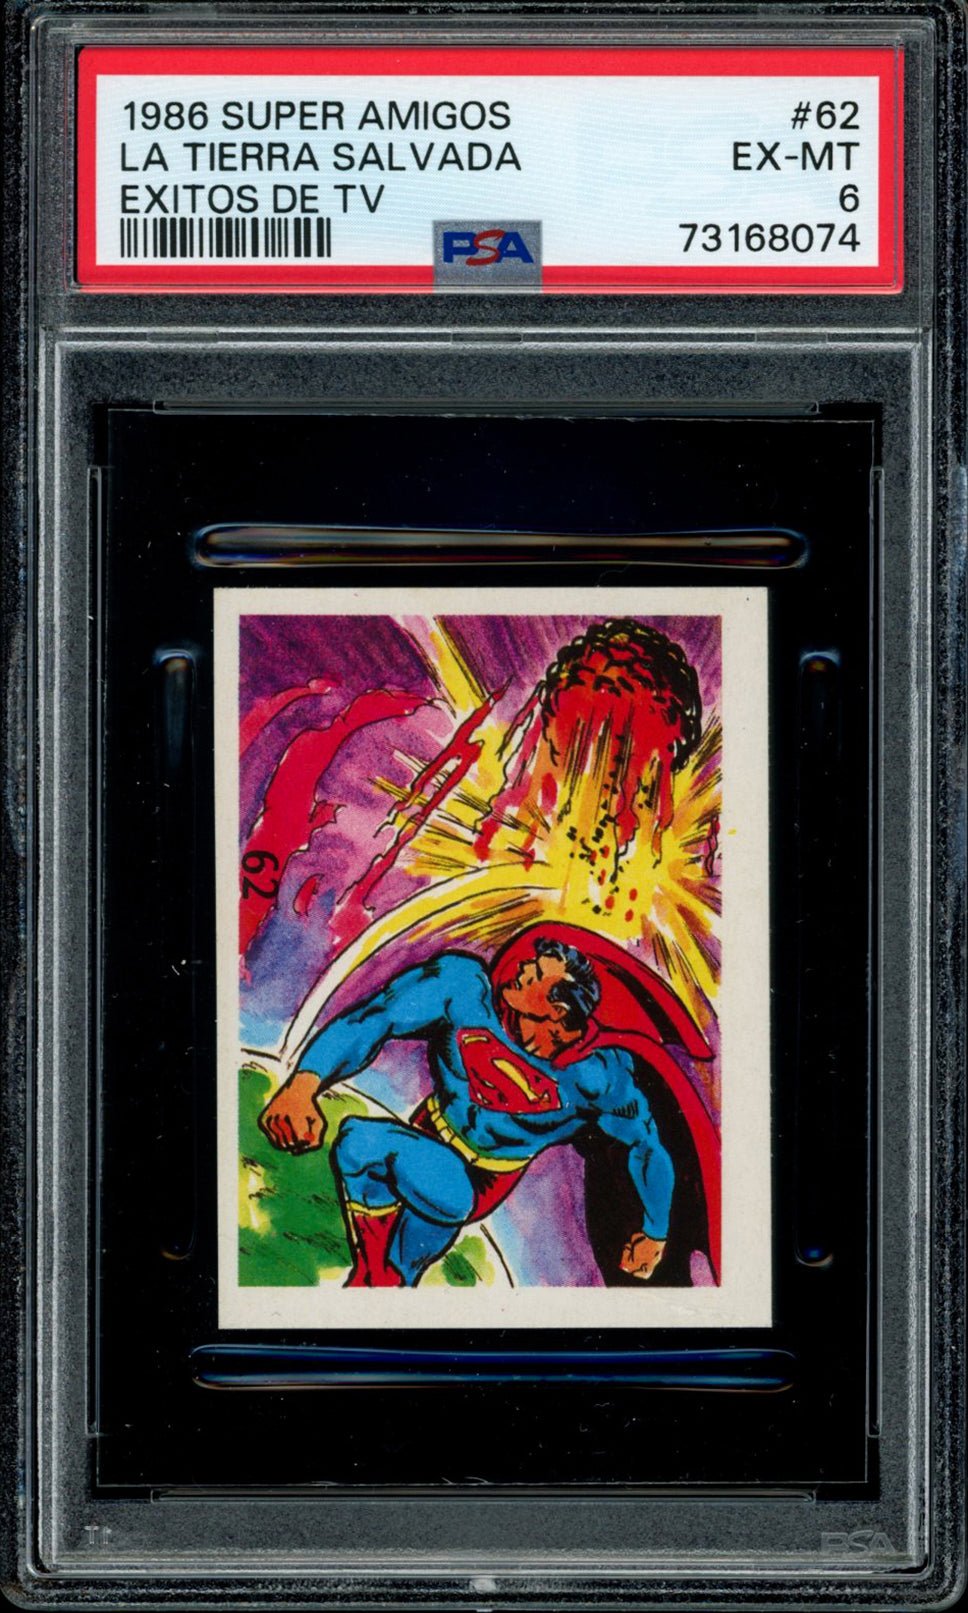 SUPERMAN PSA 6 1986 Reyauca Super Amigos Exitos de TV #62 C1 DC Comics Base Graded Cards - Hobby Gems